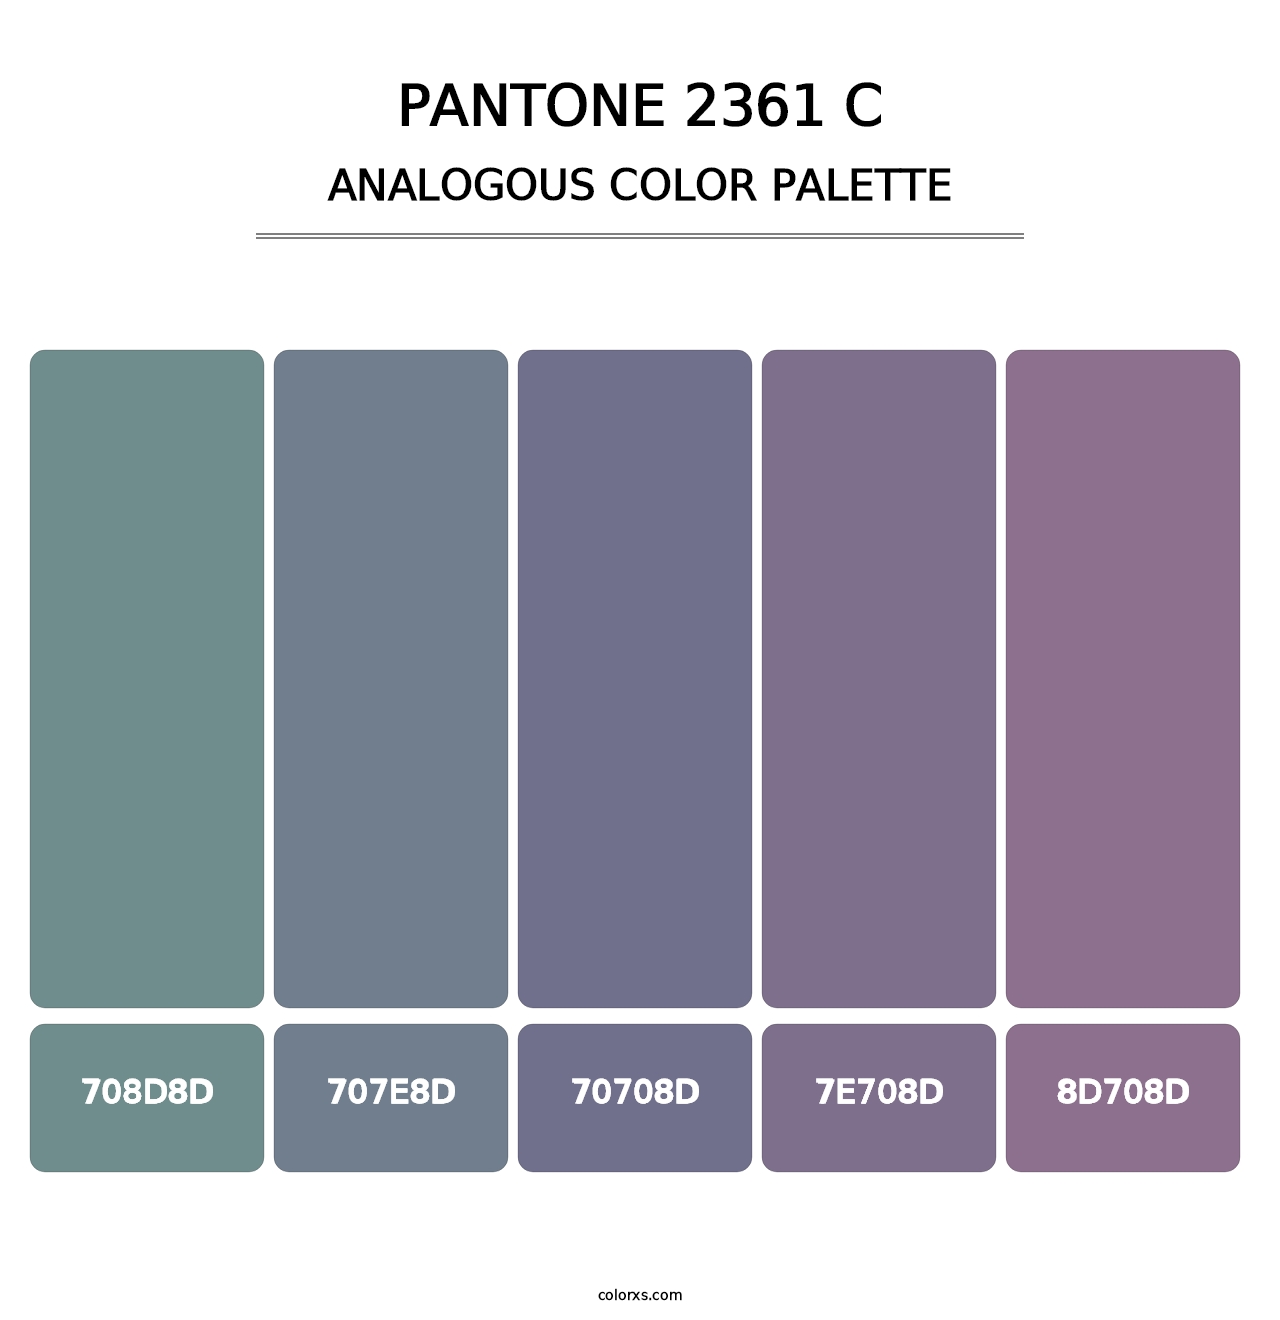 PANTONE 2361 C - Analogous Color Palette